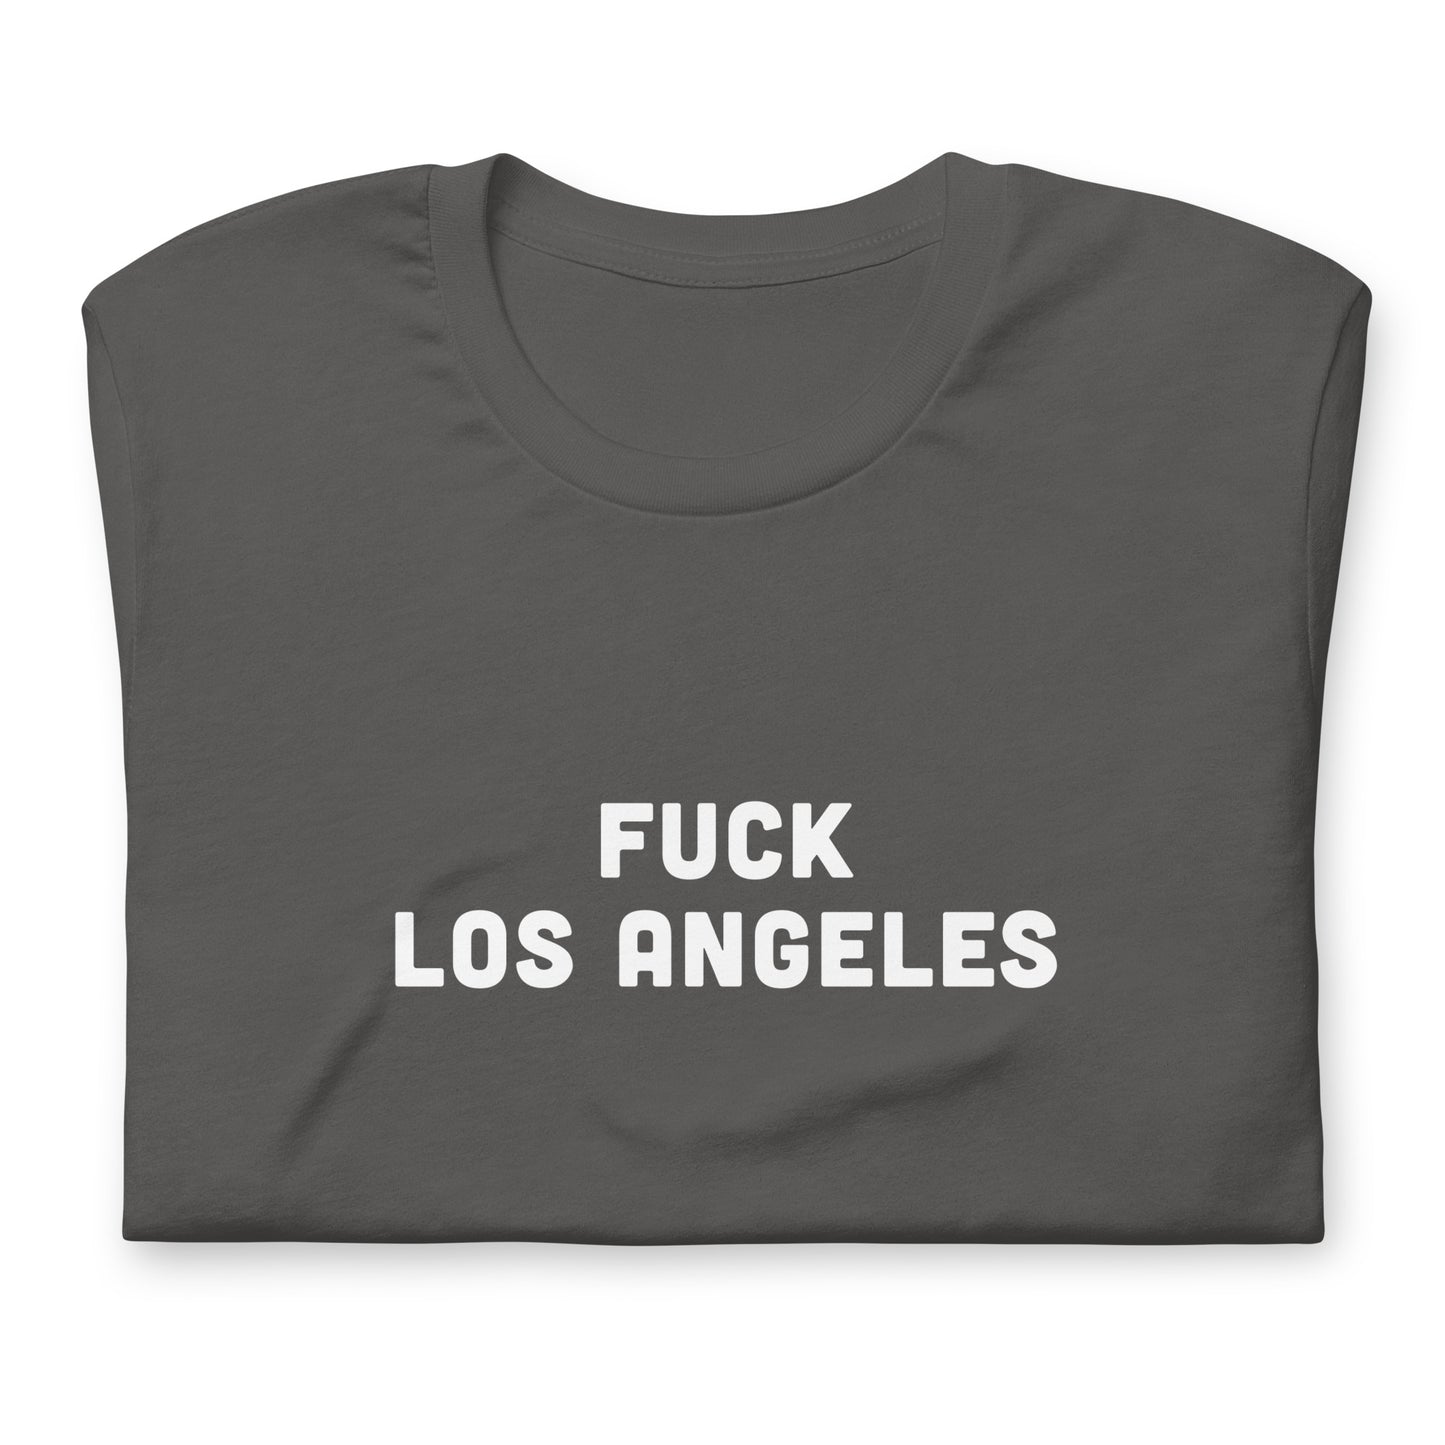 Fuck Los Angeles T-Shirt Size 2XL Color Black